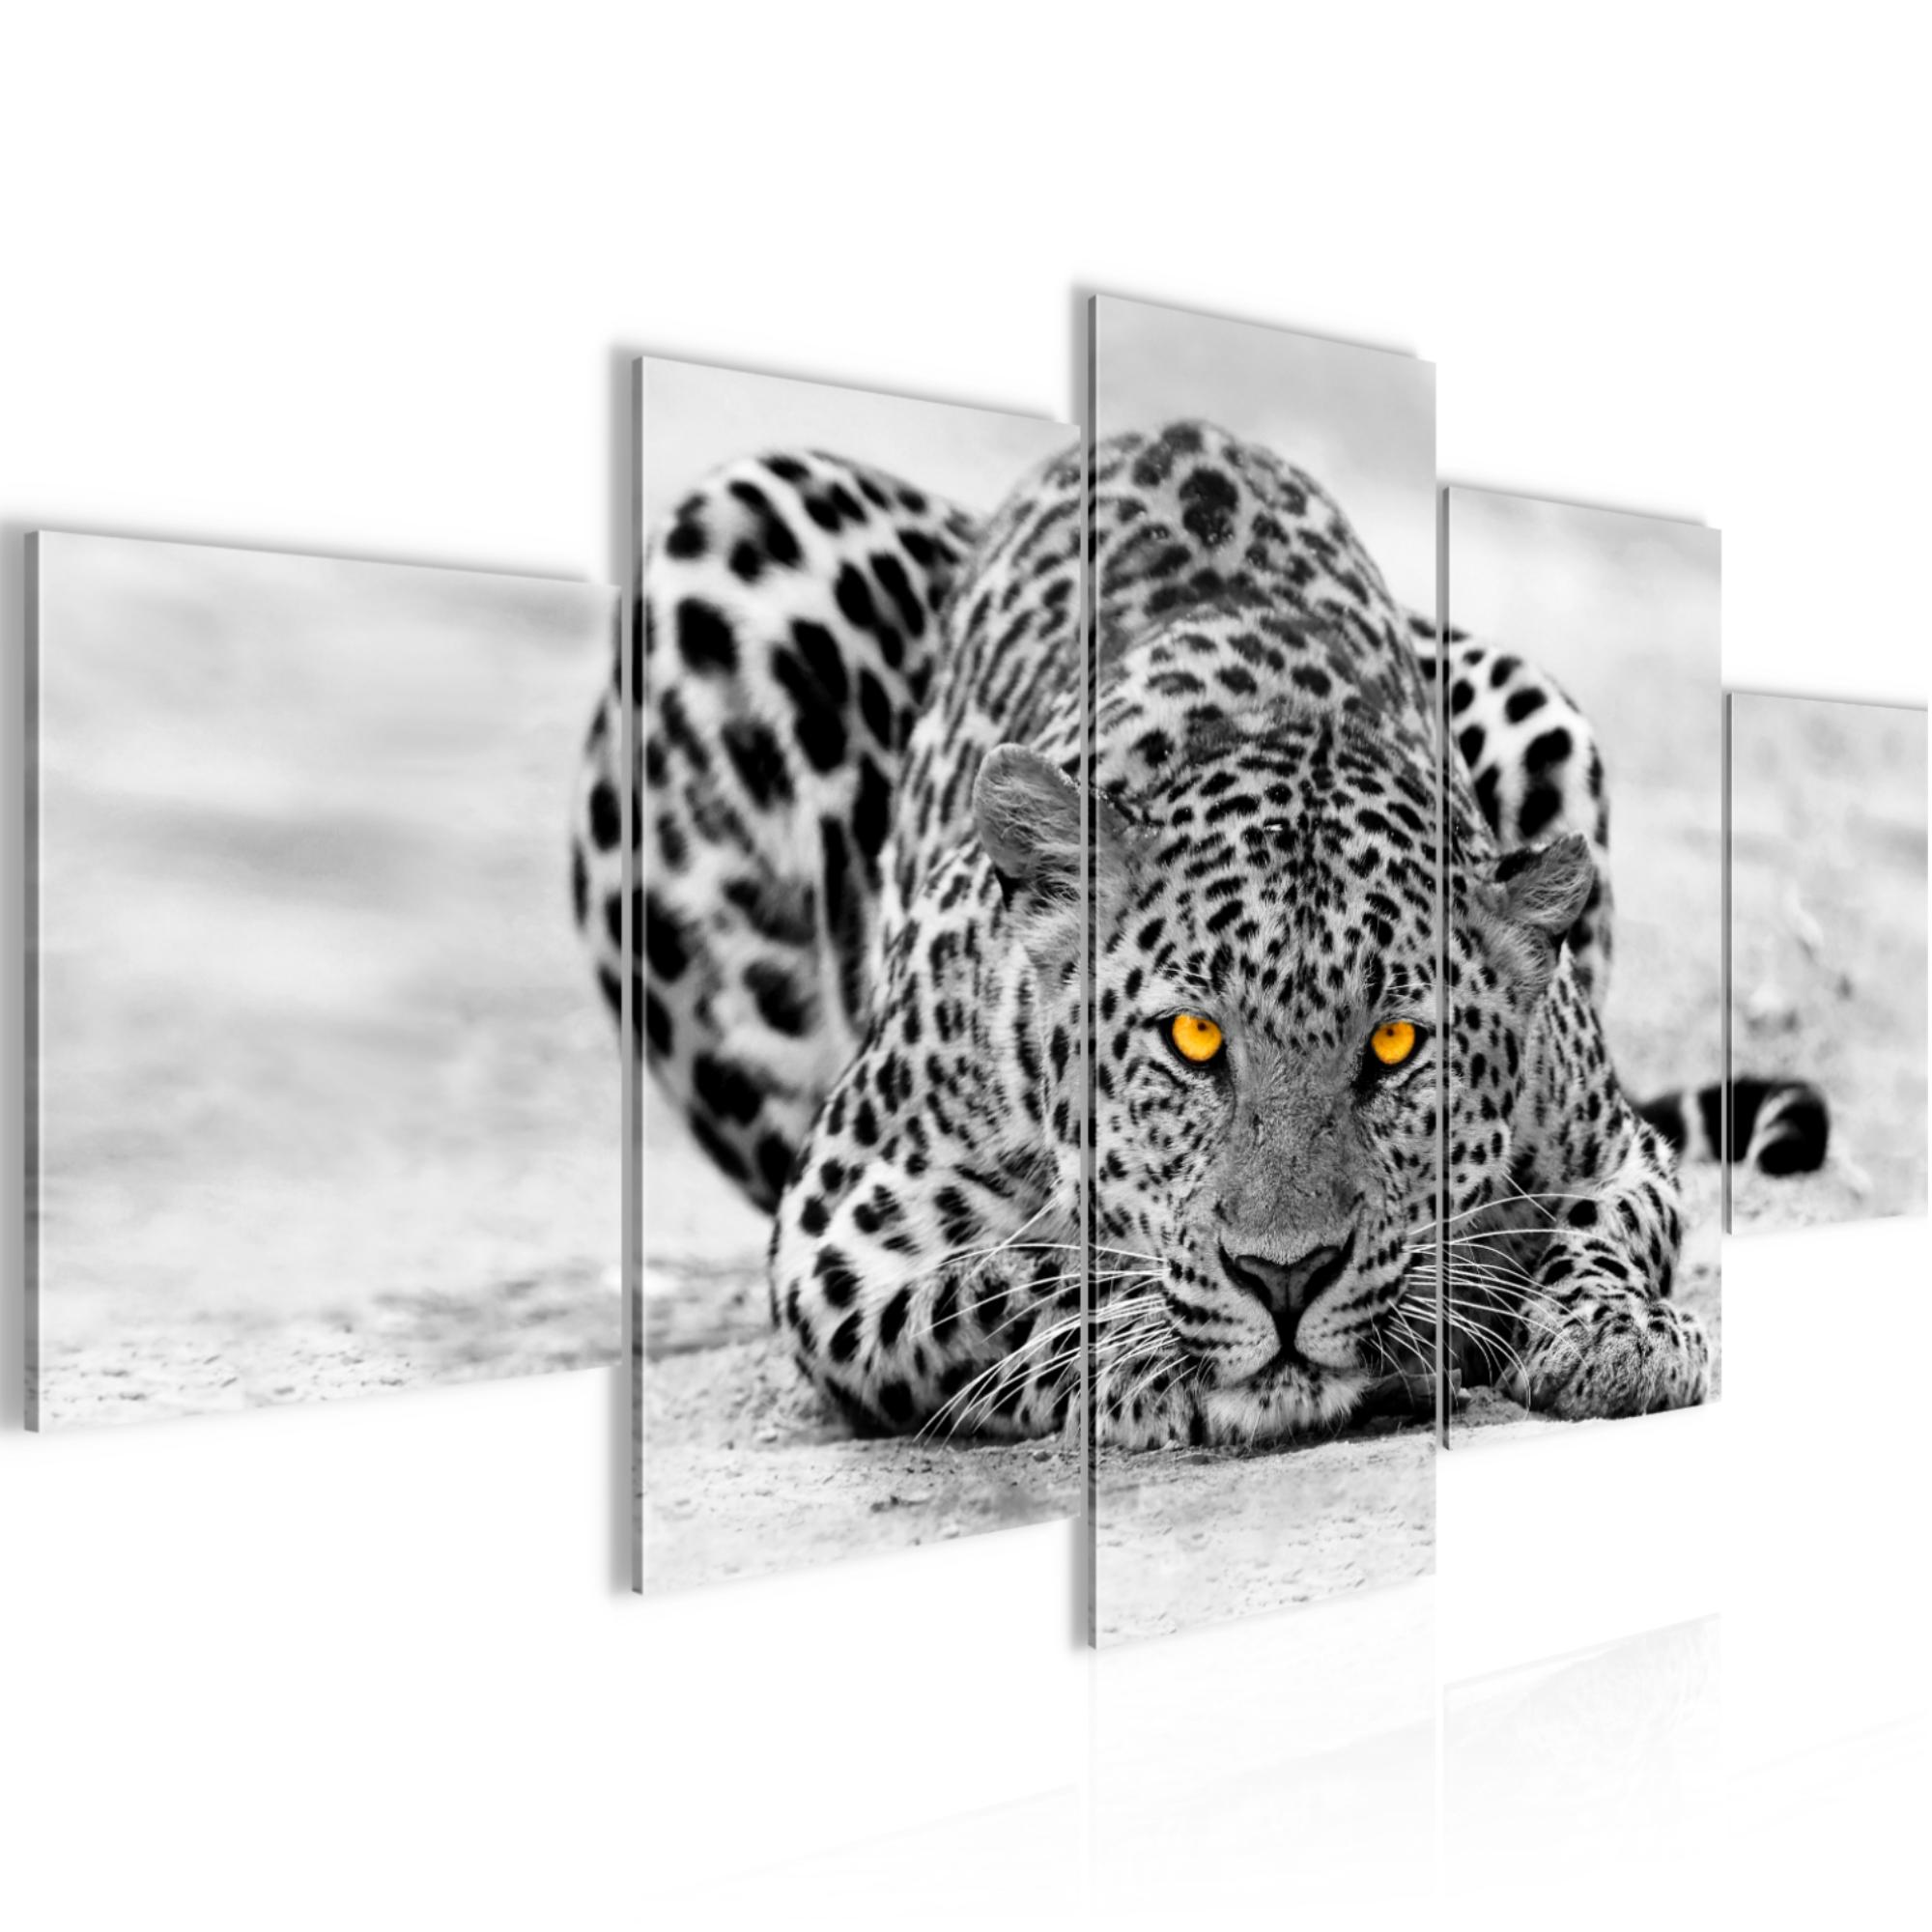 artissimo Glasbild 30x30cm Bild aus Glas Wandbild Wohnzimmer Löwe Tiger Leopard